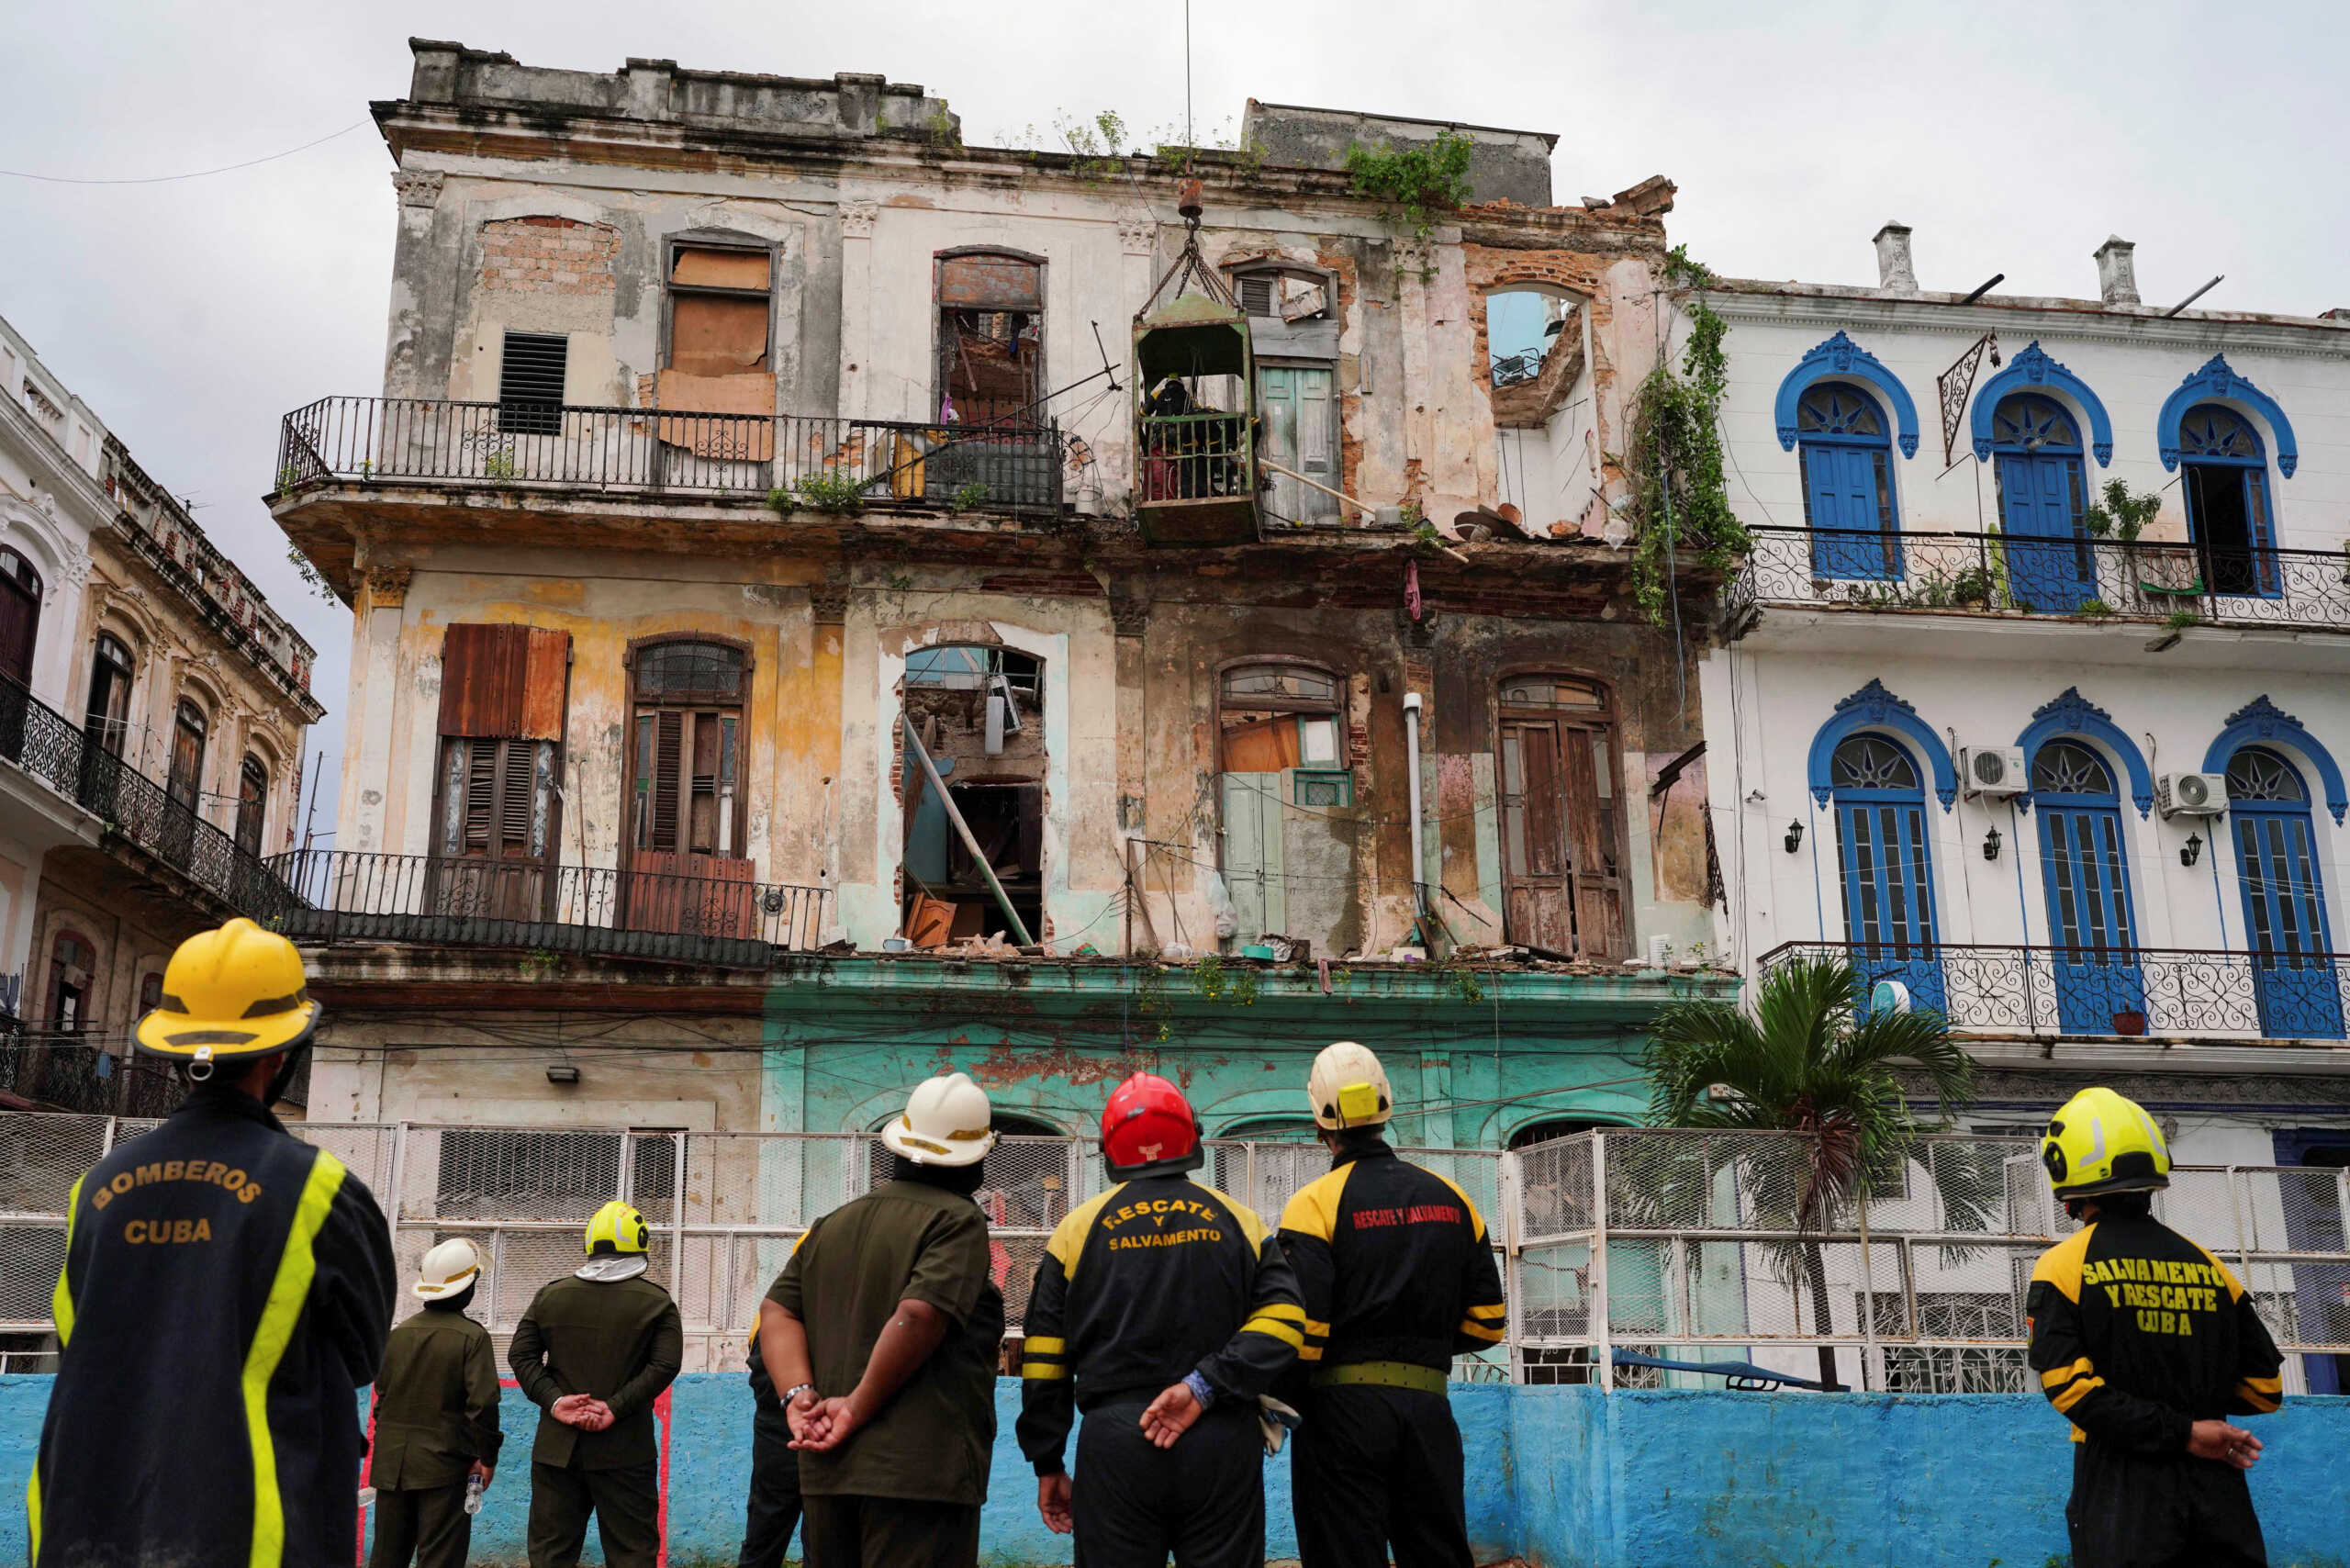 Κούβα: 3 οι νεκροί από την κατάρρευση κτηρίου στην Αβάνα – Ανάμεσά τους 2 πυροσβέστες